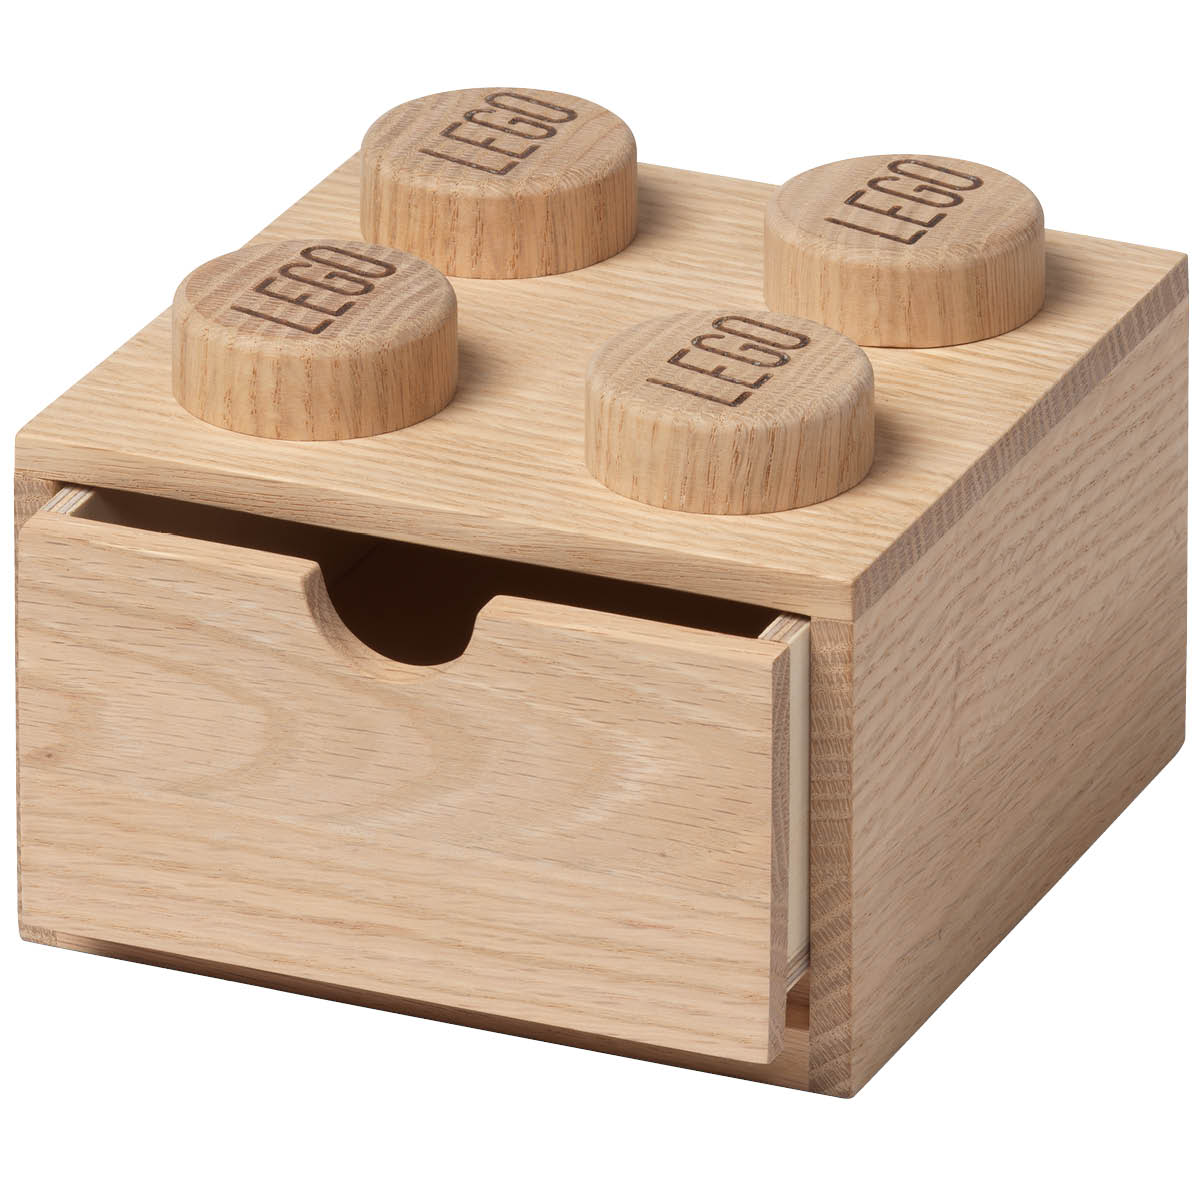 NHG - Wooden collection Skrivbordslåda 2x2 Ljus Ek